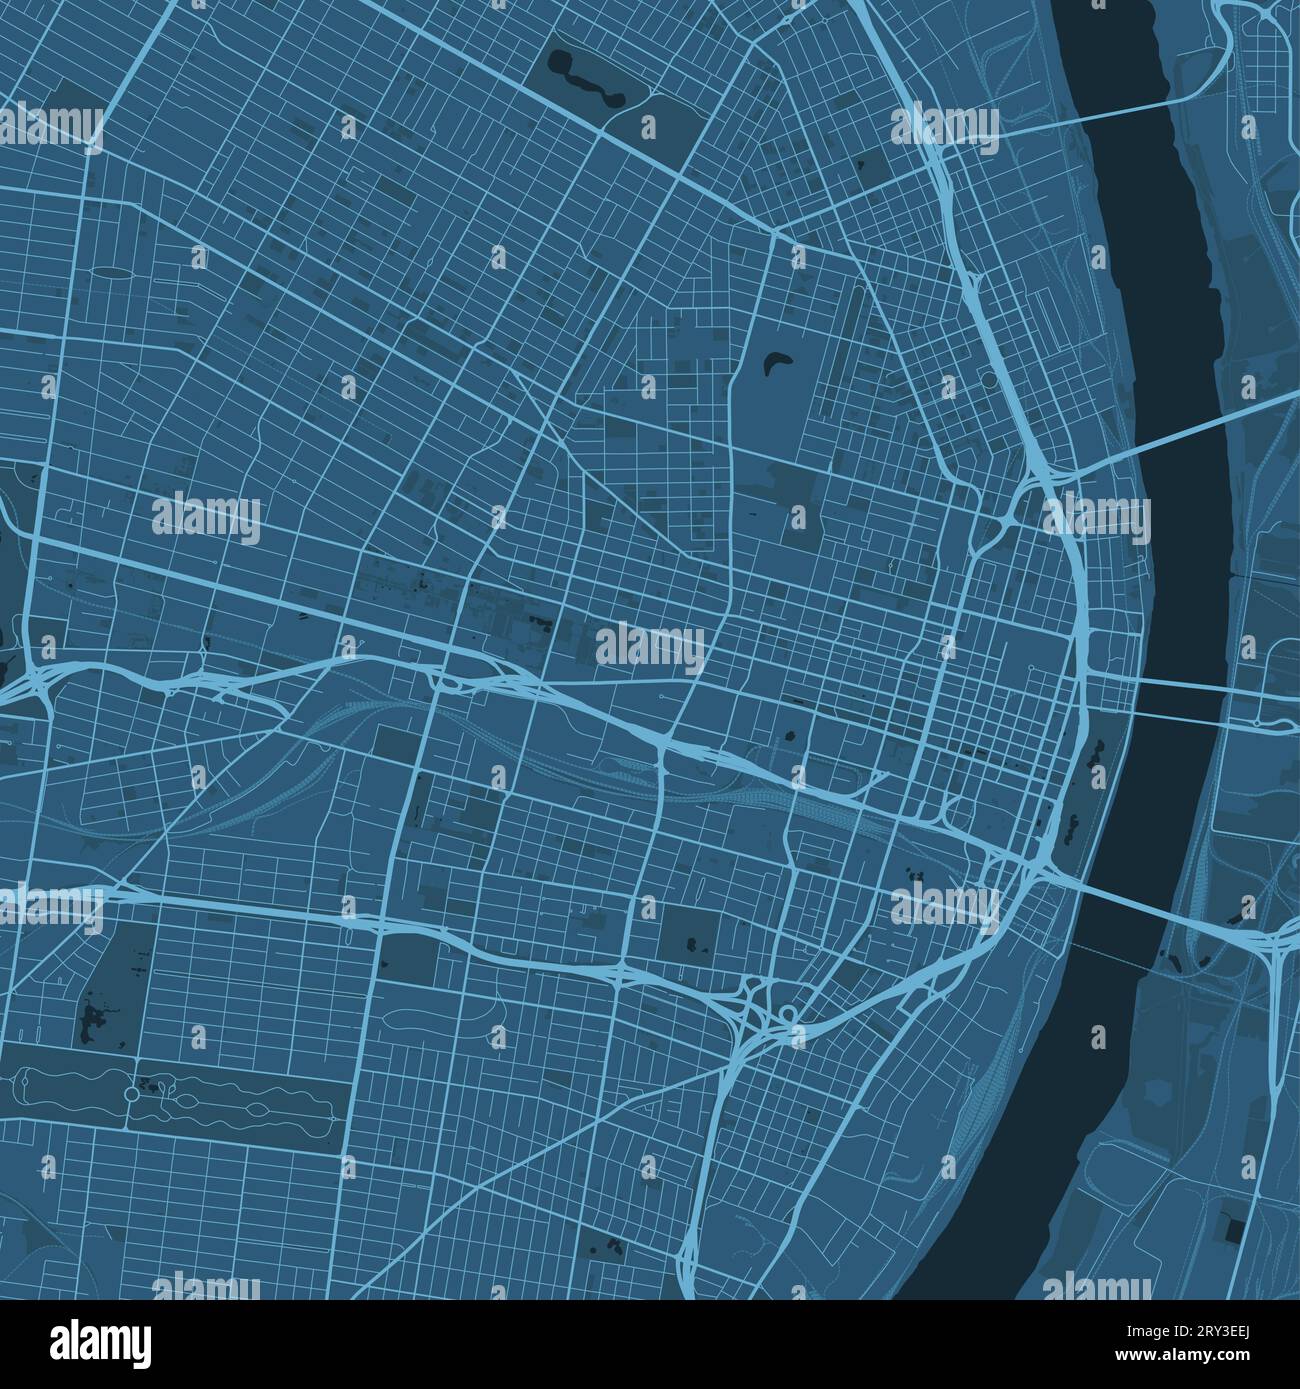 Blue St Mappa Louis, Missouri, Stati Uniti, mappa dettagliata del comune, panorama dello skyline. Mappa turistica grafica decorativa di St. Louis Territory. Royal Illustrazione Vettoriale